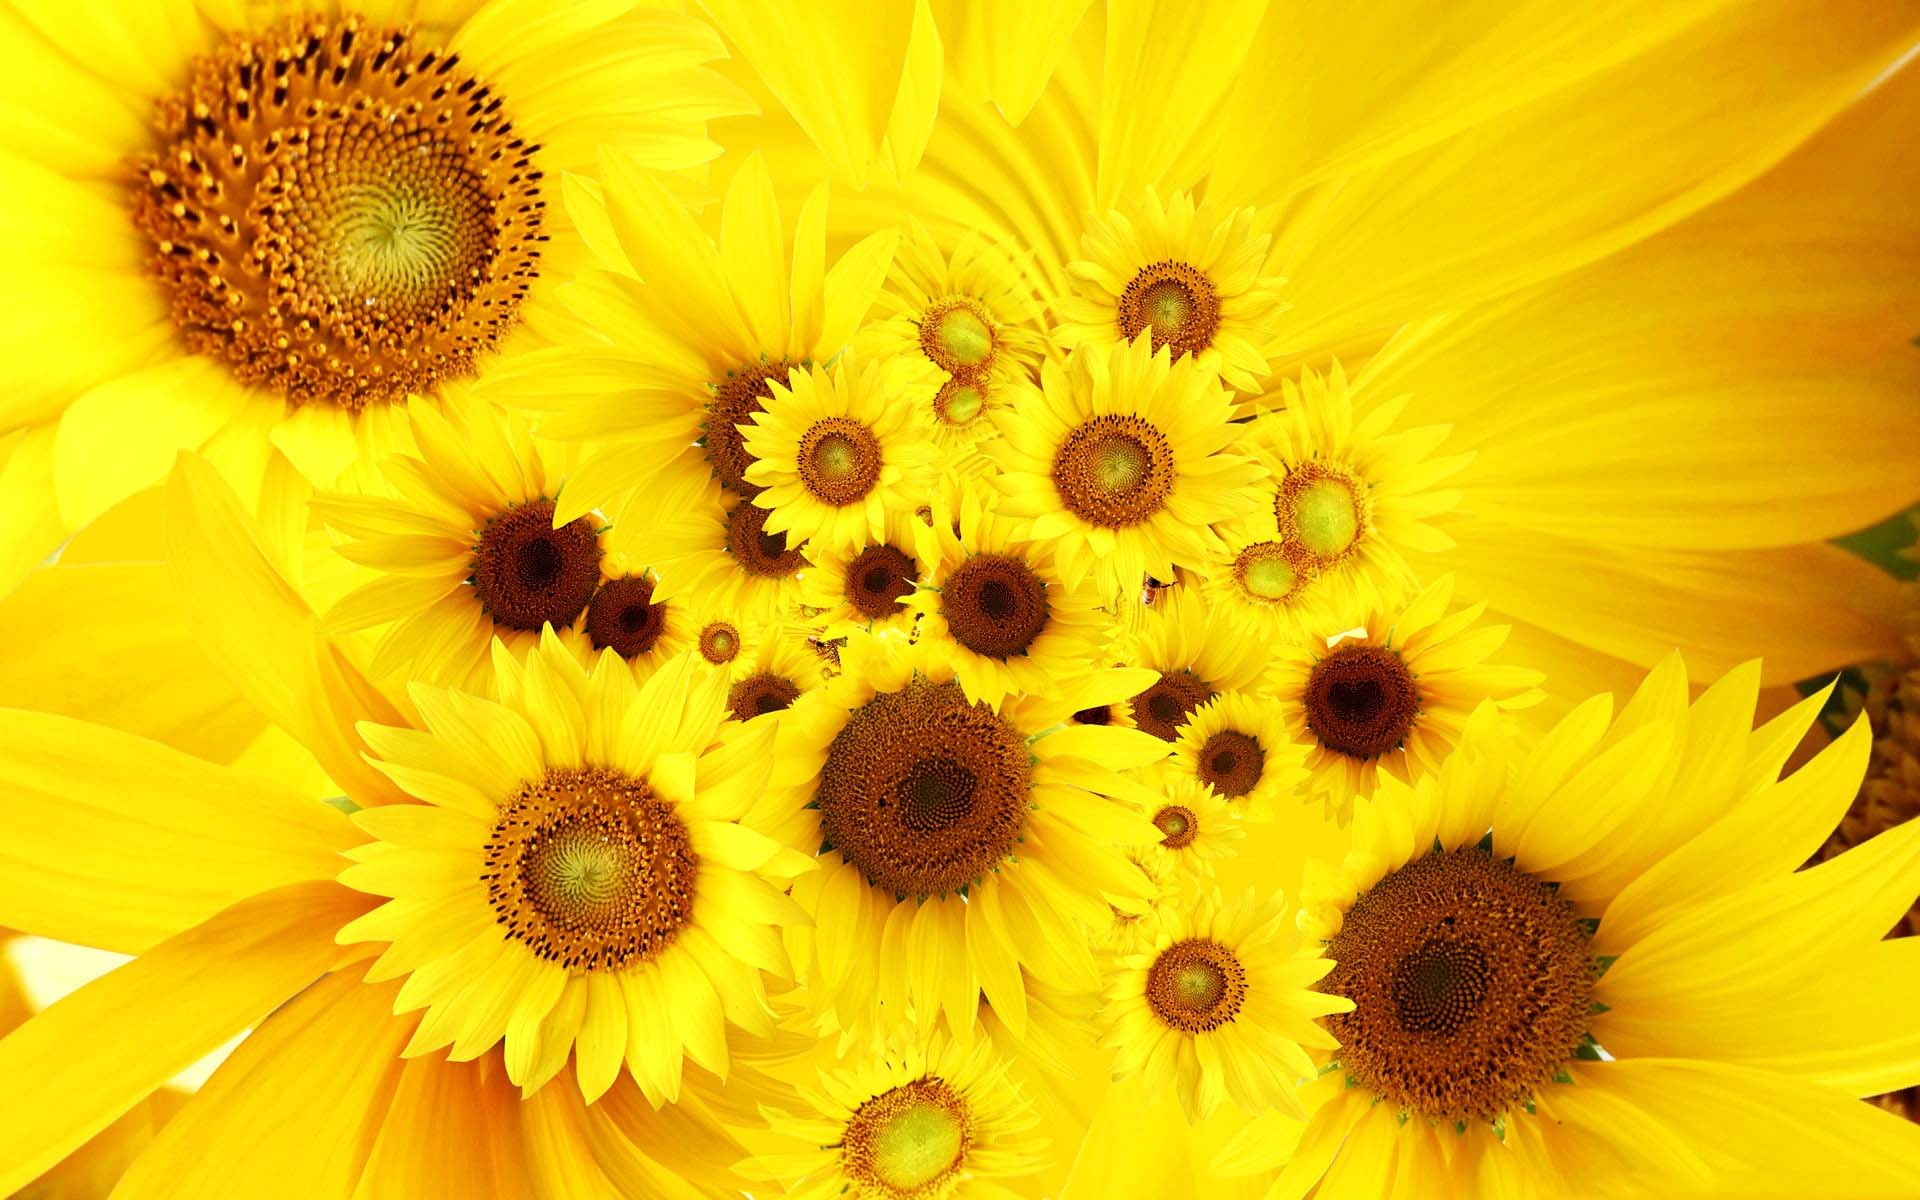 Sunflower Field Photography Sunflower At Sunset Summer Wallpaper Hd   Wallpapers13com